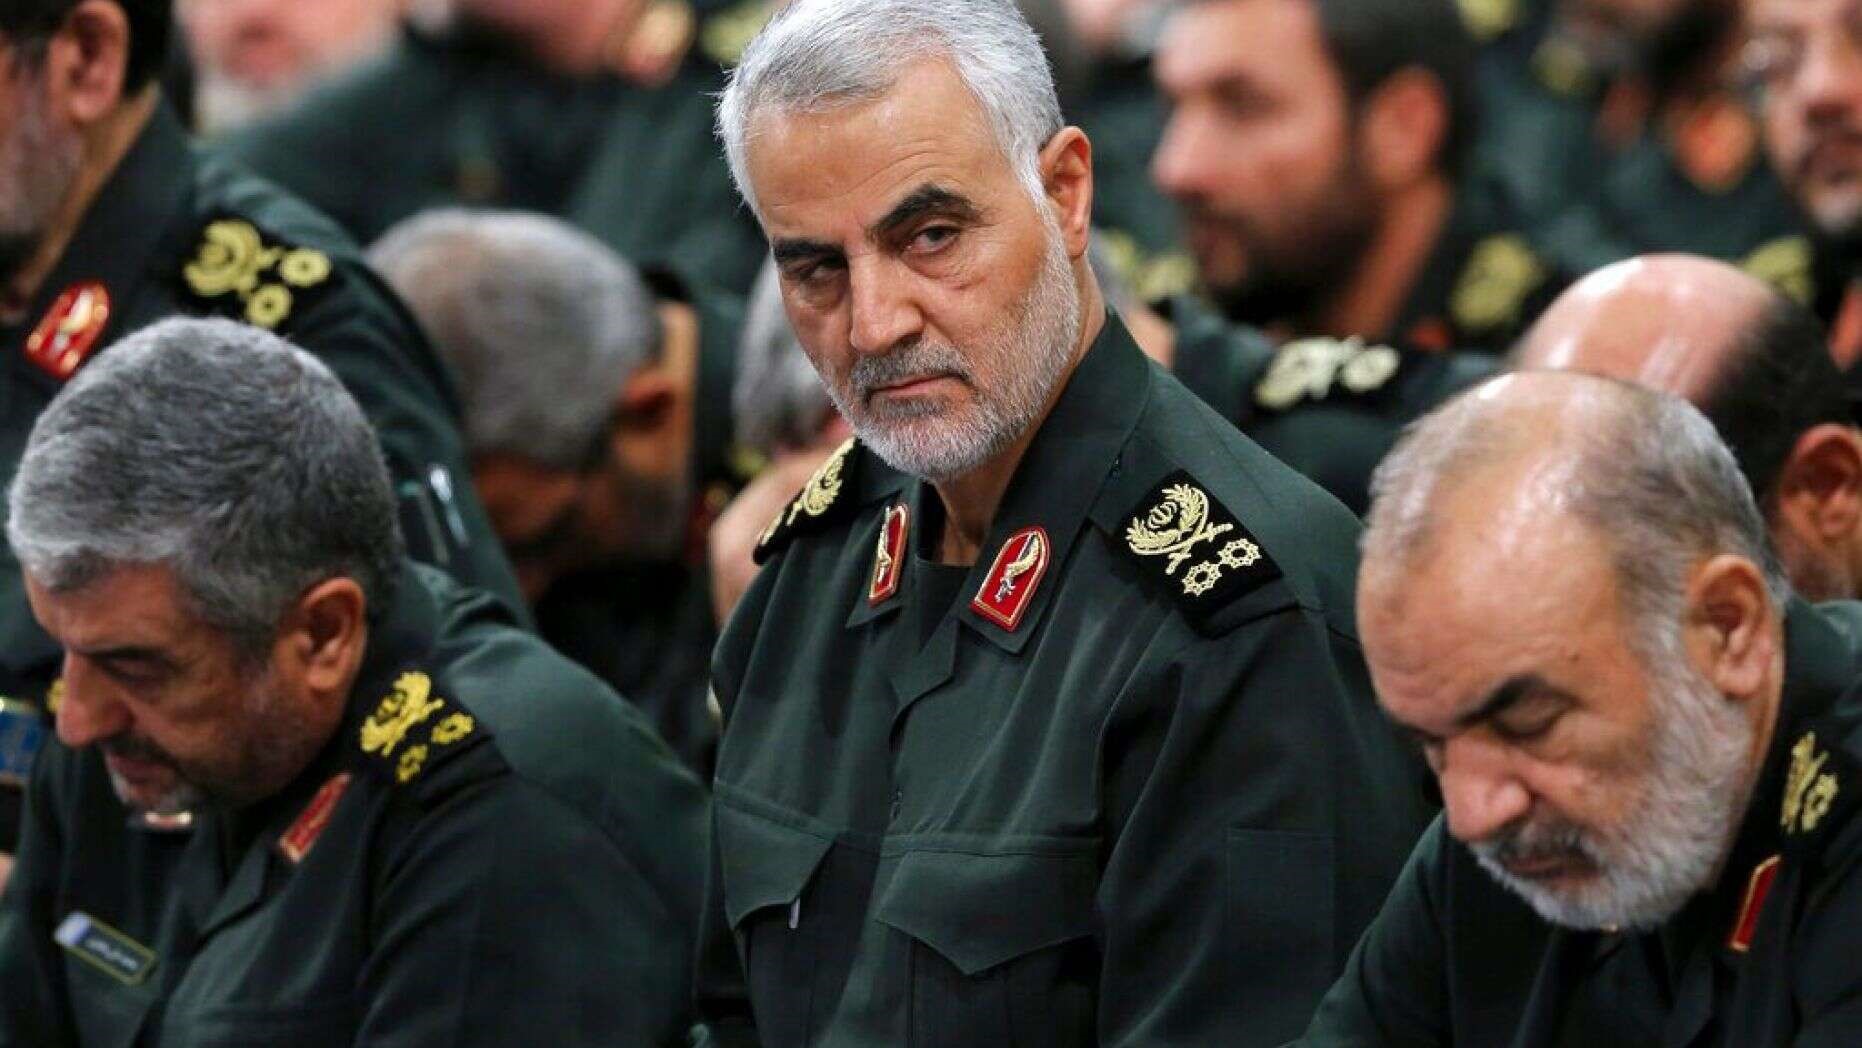 Tướng Qassem Soleimani của vệ binh cách mạng Hồi giáo Iran dự một cuộc họp ở Iran. Ảnh: AP.